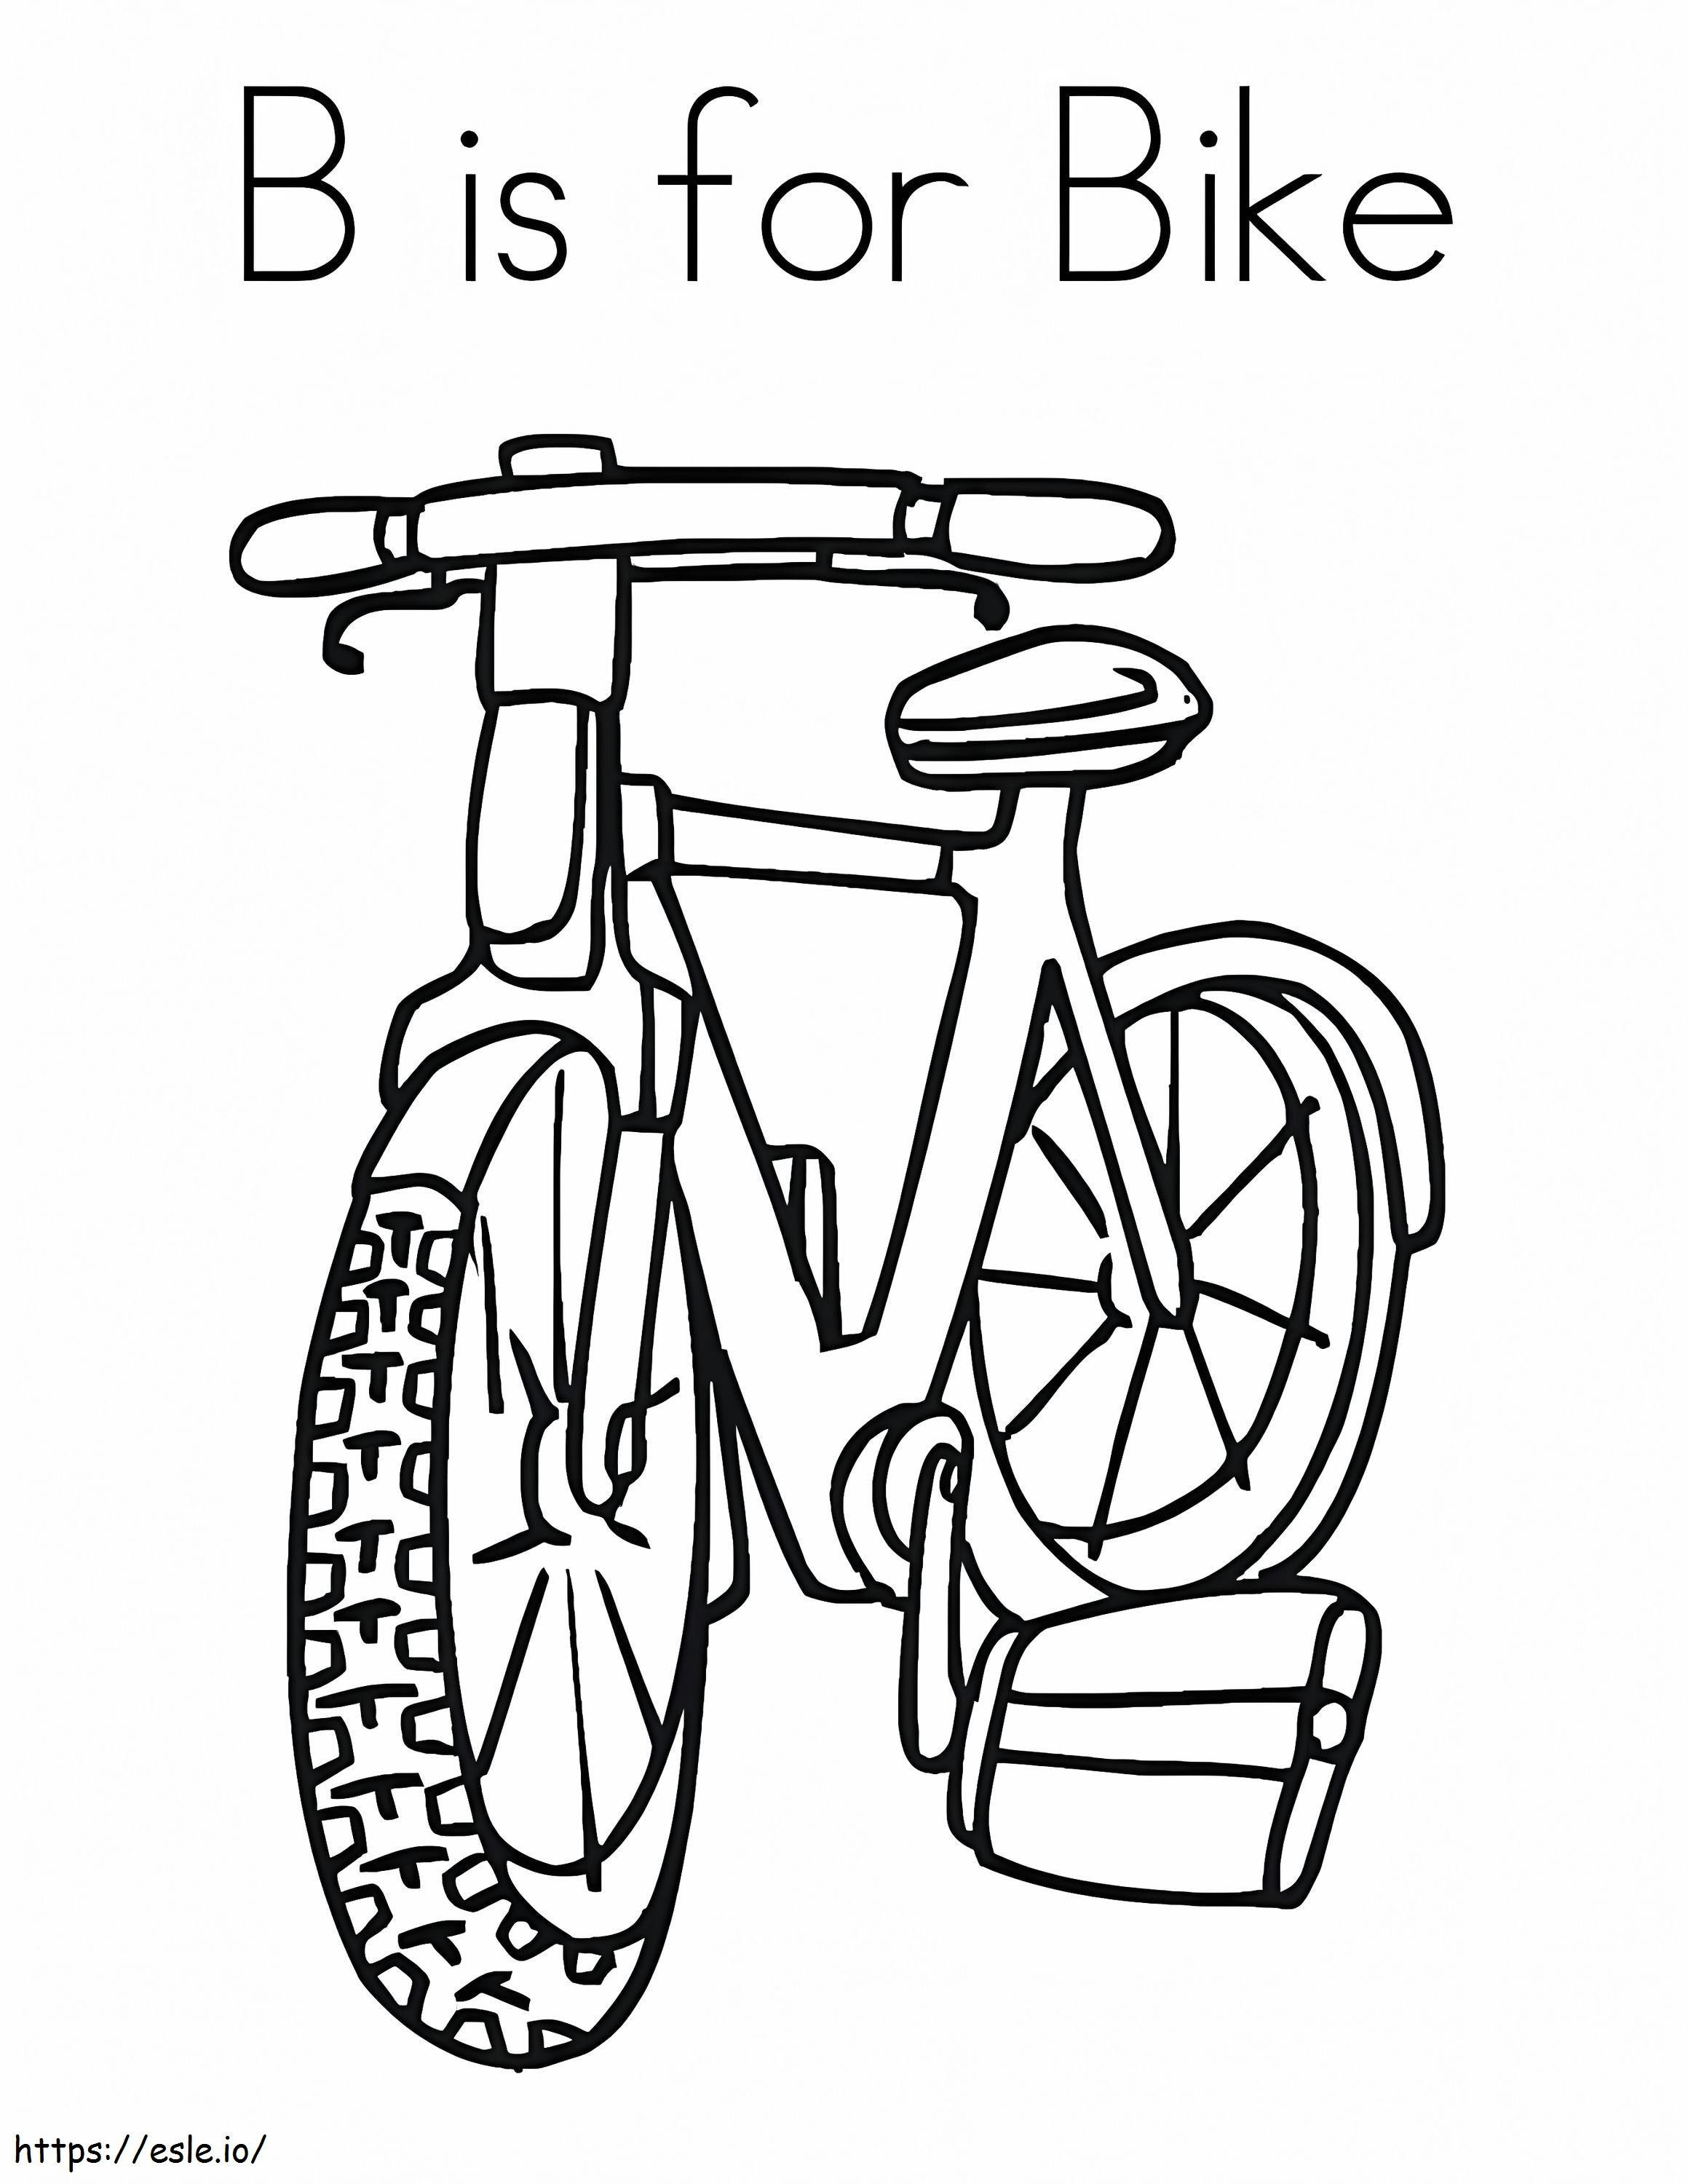 B es para bicicleta para colorear